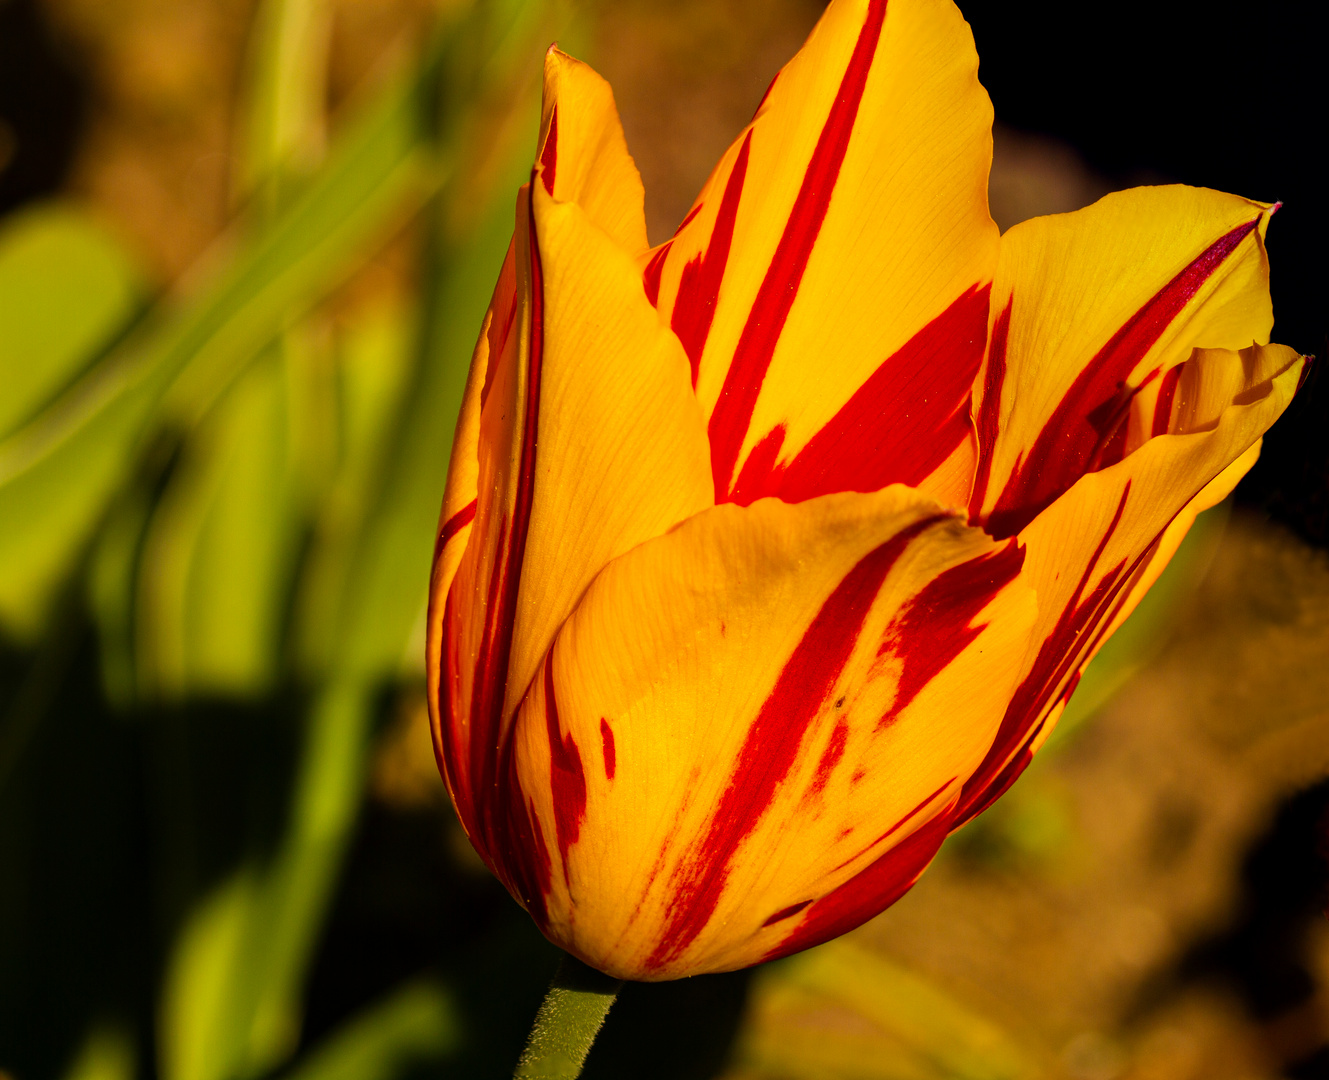 Tulpe im botanischen Garten Krefeld